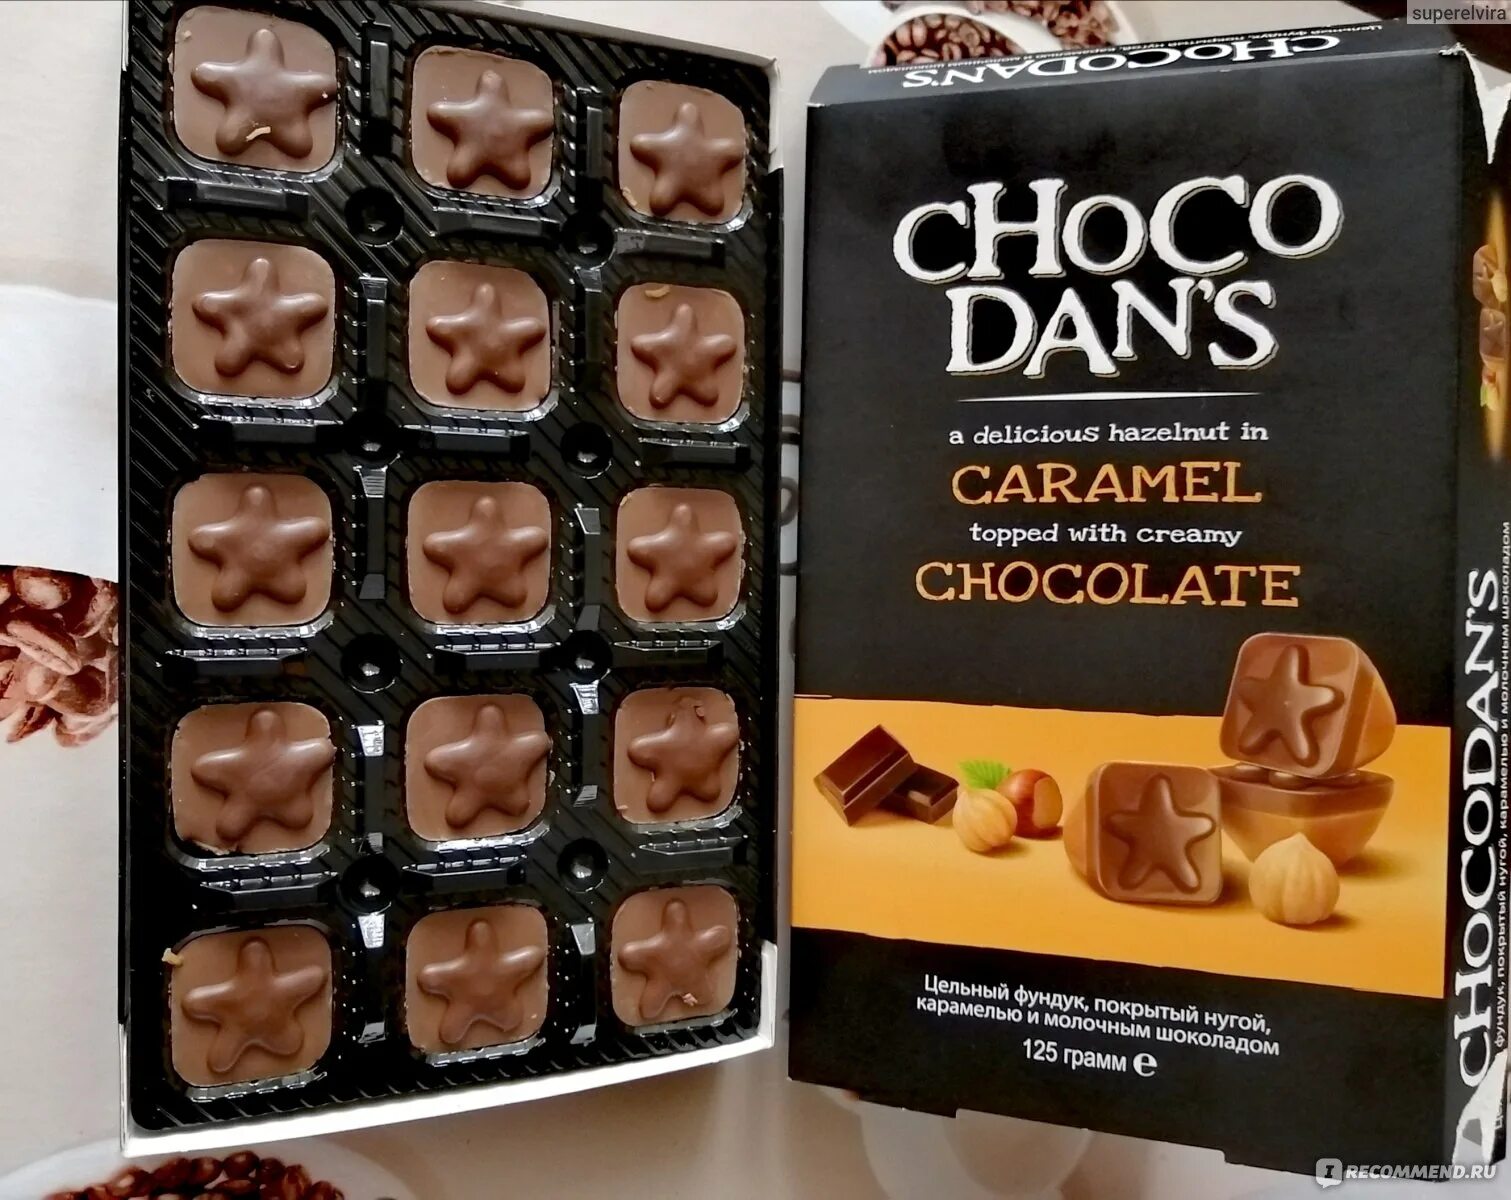 Choco dan s. Конфеты с цельным фундуком. Конфеты Шокодан'с. Конфеты Chocodan's с фундуком. Конфеты Чоко шоколадные.